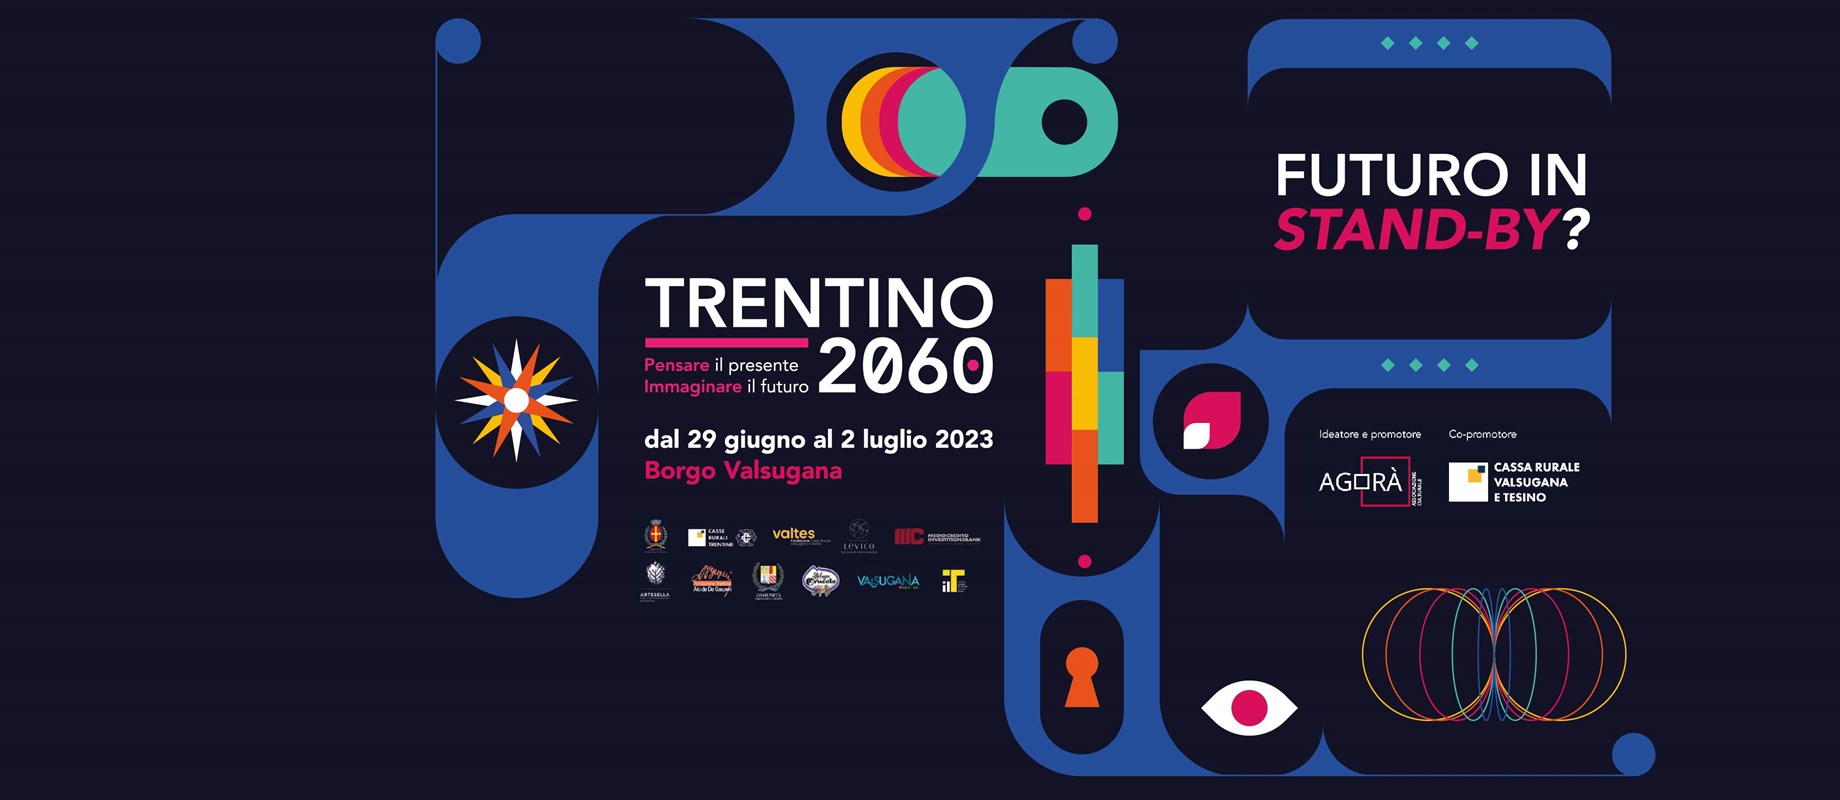 Pensare il presente, immaginare il futuro. Trentino 2060. 